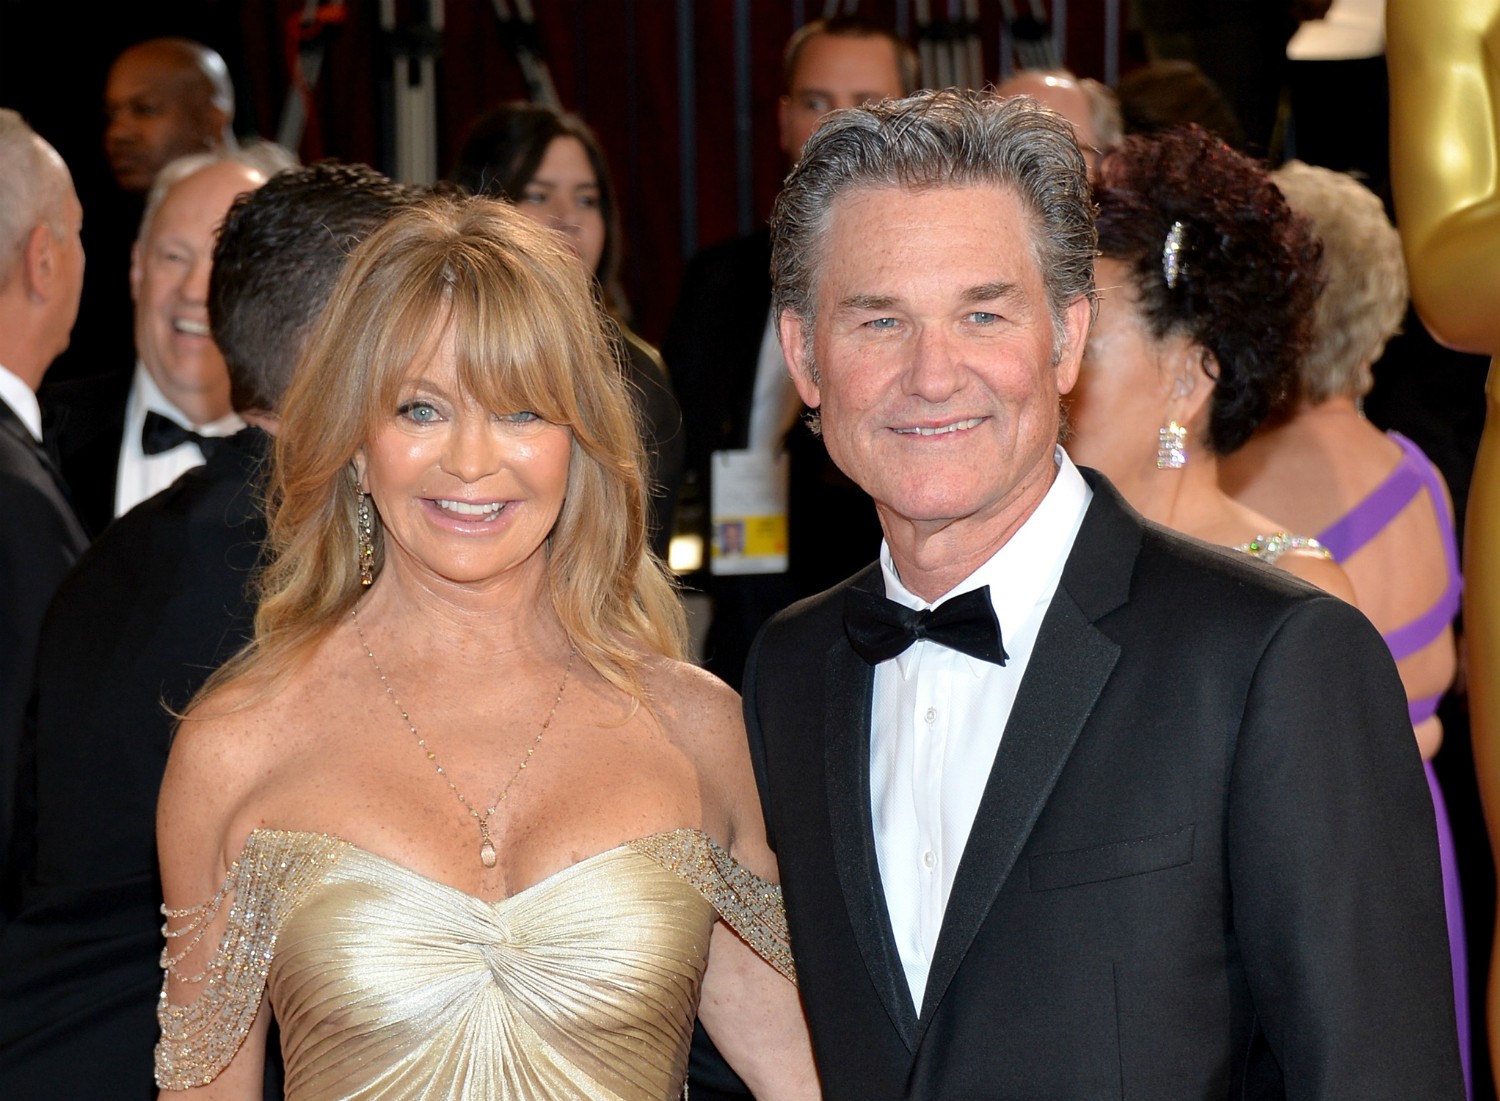 Os atores Goldie Hawn, de 68 anos, e Kurt Russell, de 63, se conheceram em 1983. Estão unidos e firmes desde então. Mas nem pensam em se casar. Eles têm um filho juntos, Wyatt. (Foto: Getty Images)